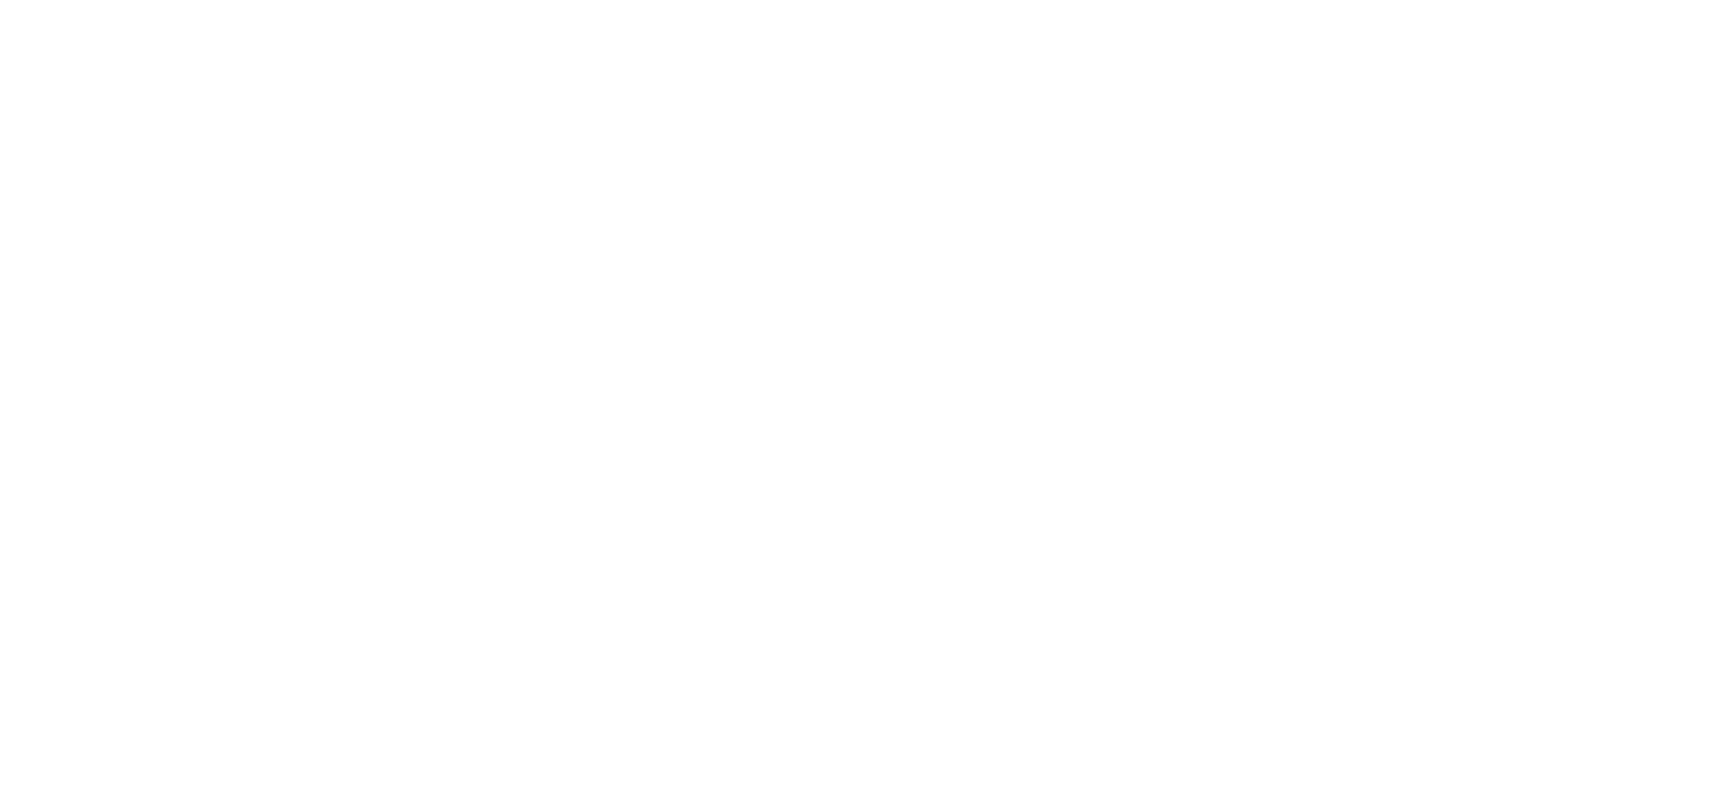 Chess Branding